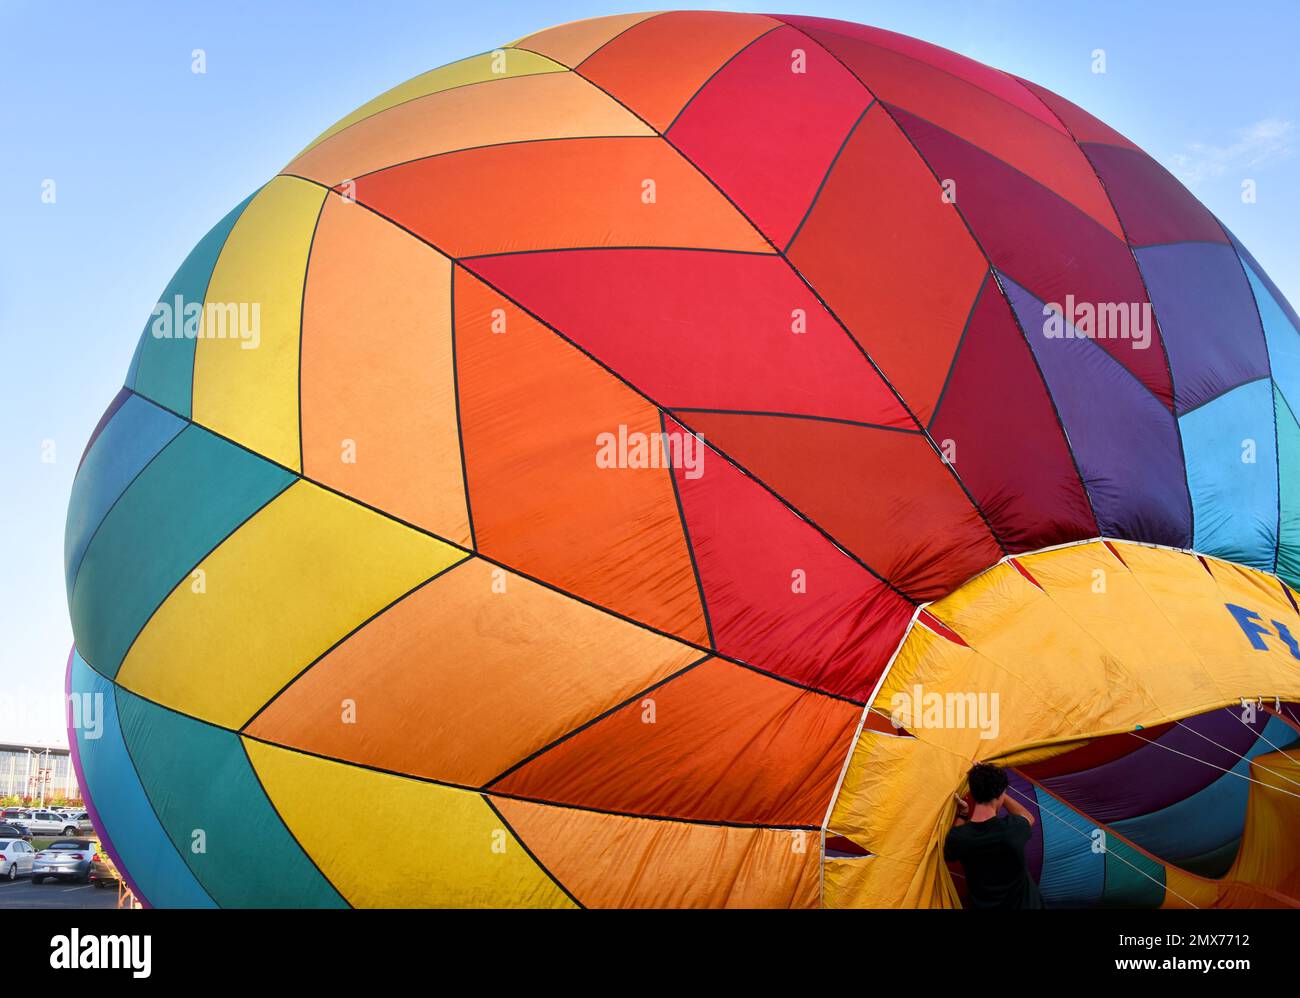 Colores brillantes forman patrones geométricos en este globo de aire caliente. El globo se está inflando. Foto de stock